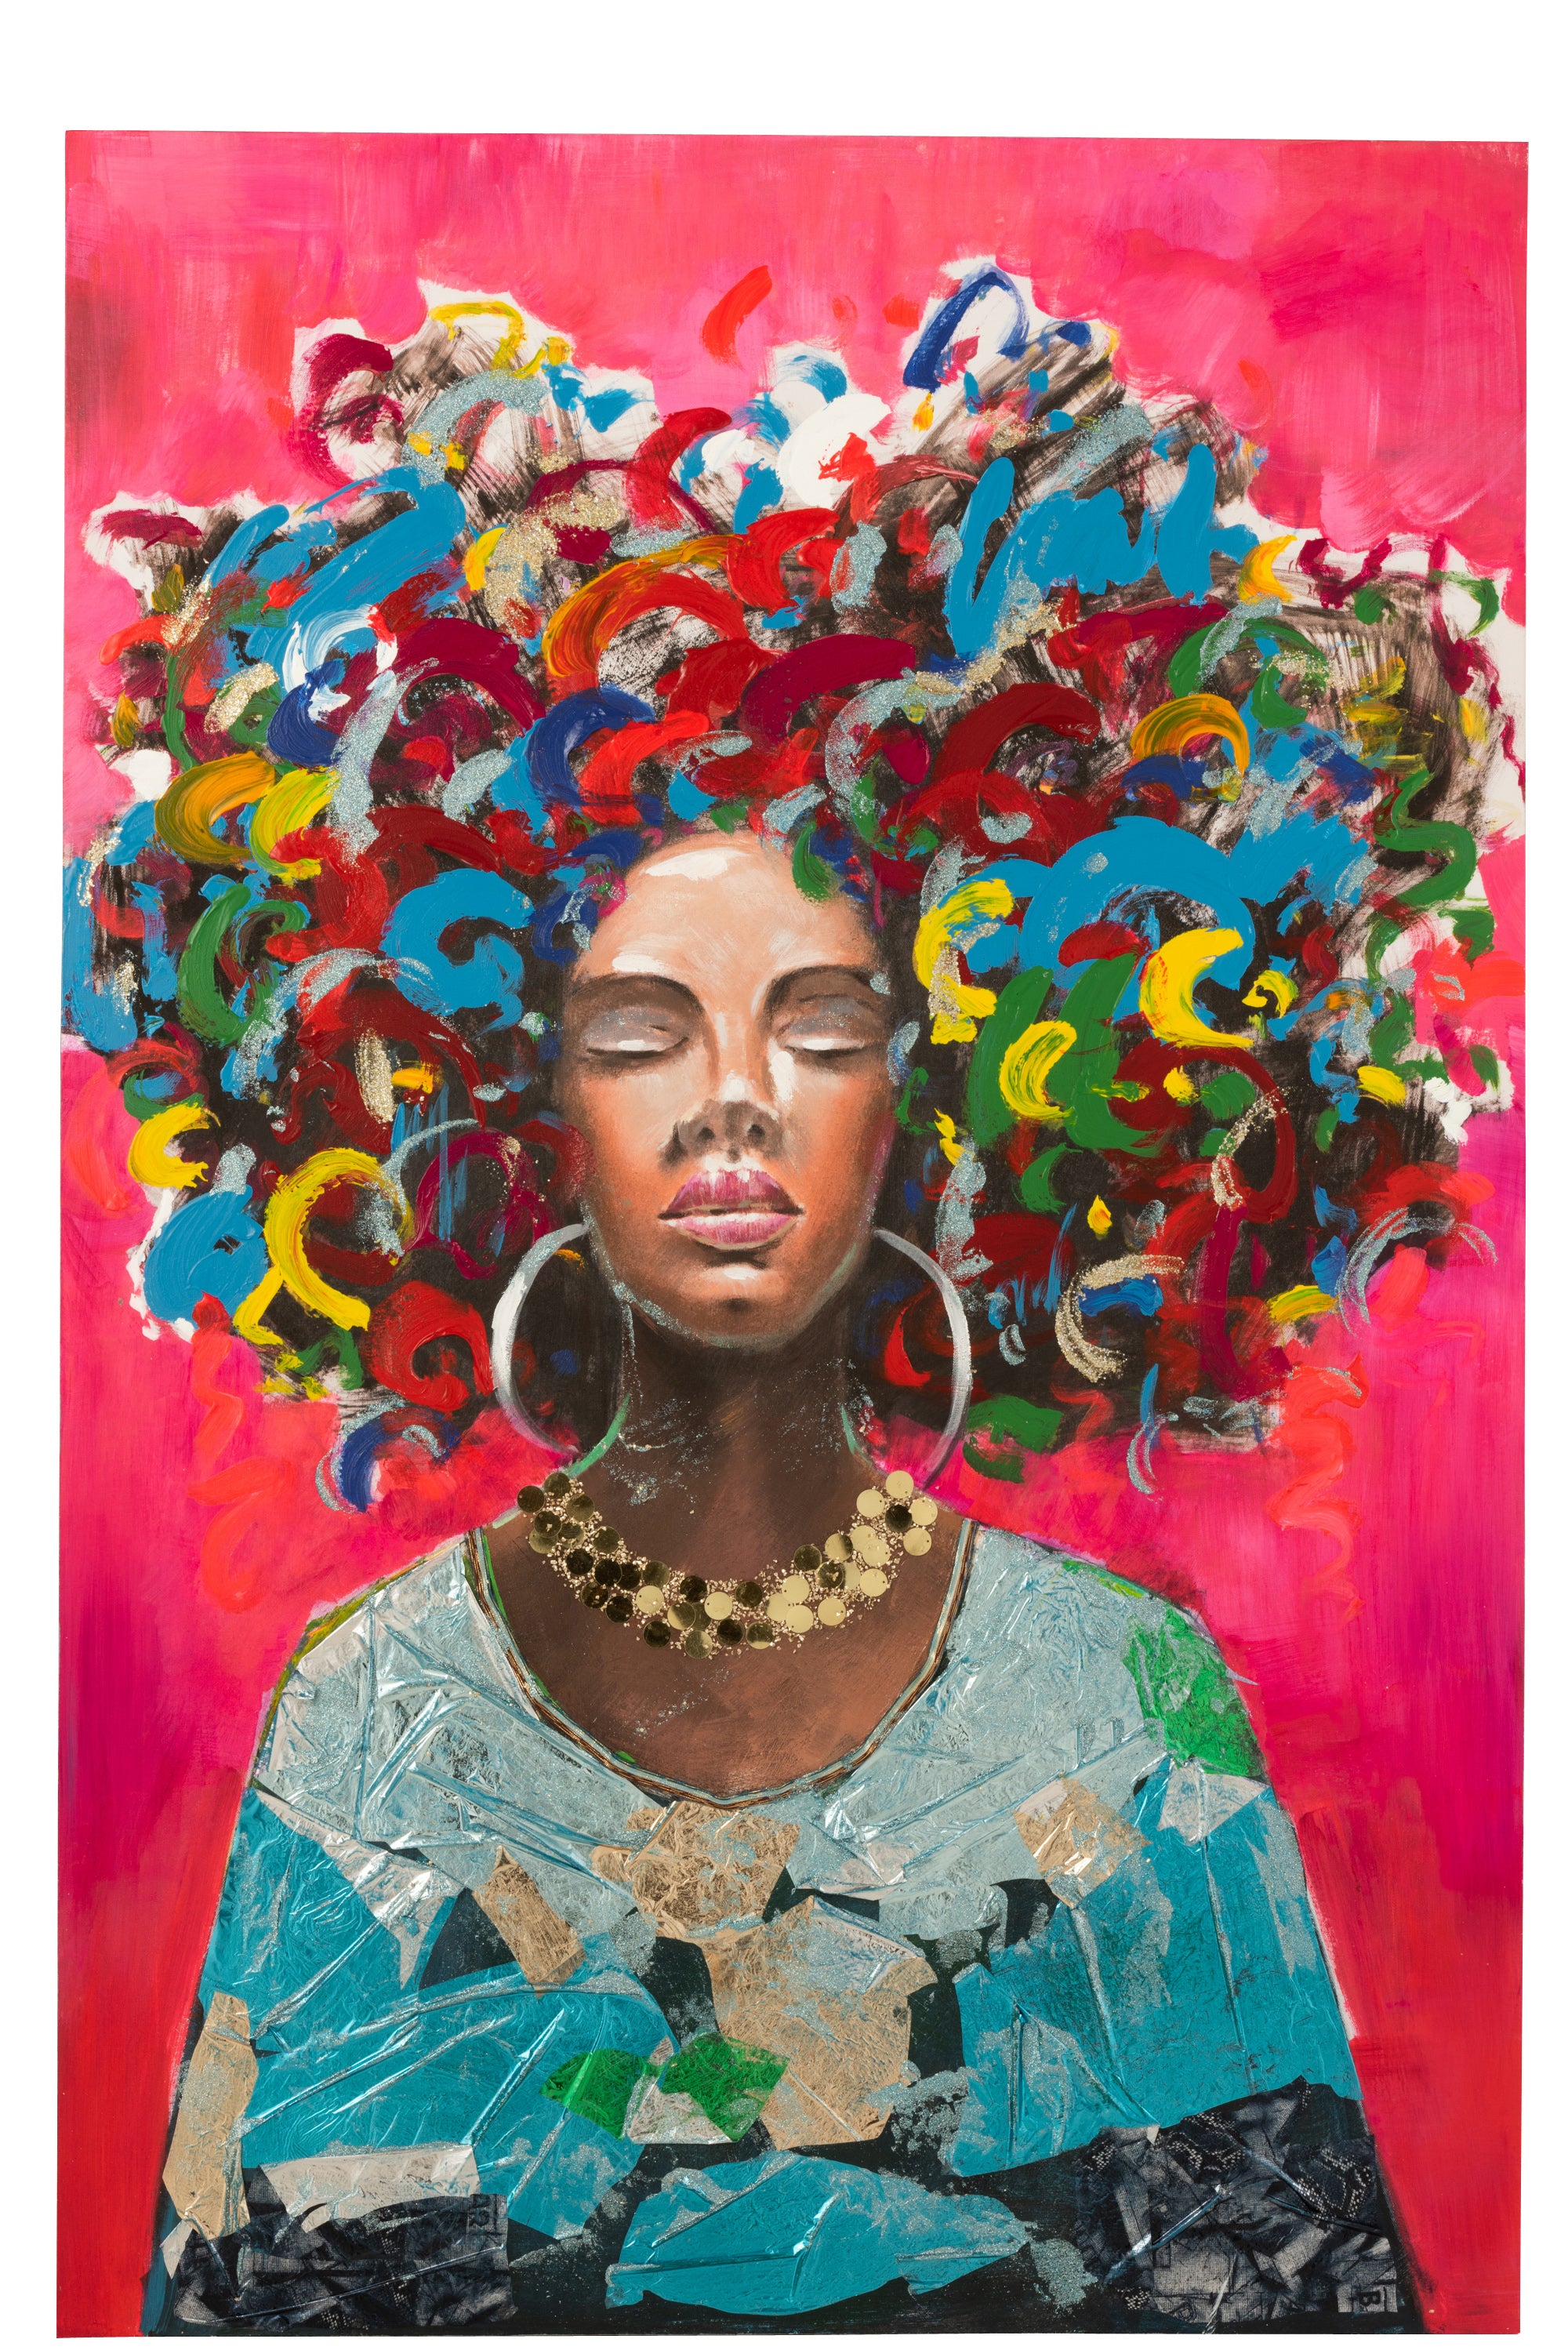 Farbenprächtiges Bild einer afrikanischen Frau im Hochformat, Haare bunt, Hintergrund kräftiges Rot; Leinwand auf Holz.Haare bunt mit goßen Creolen